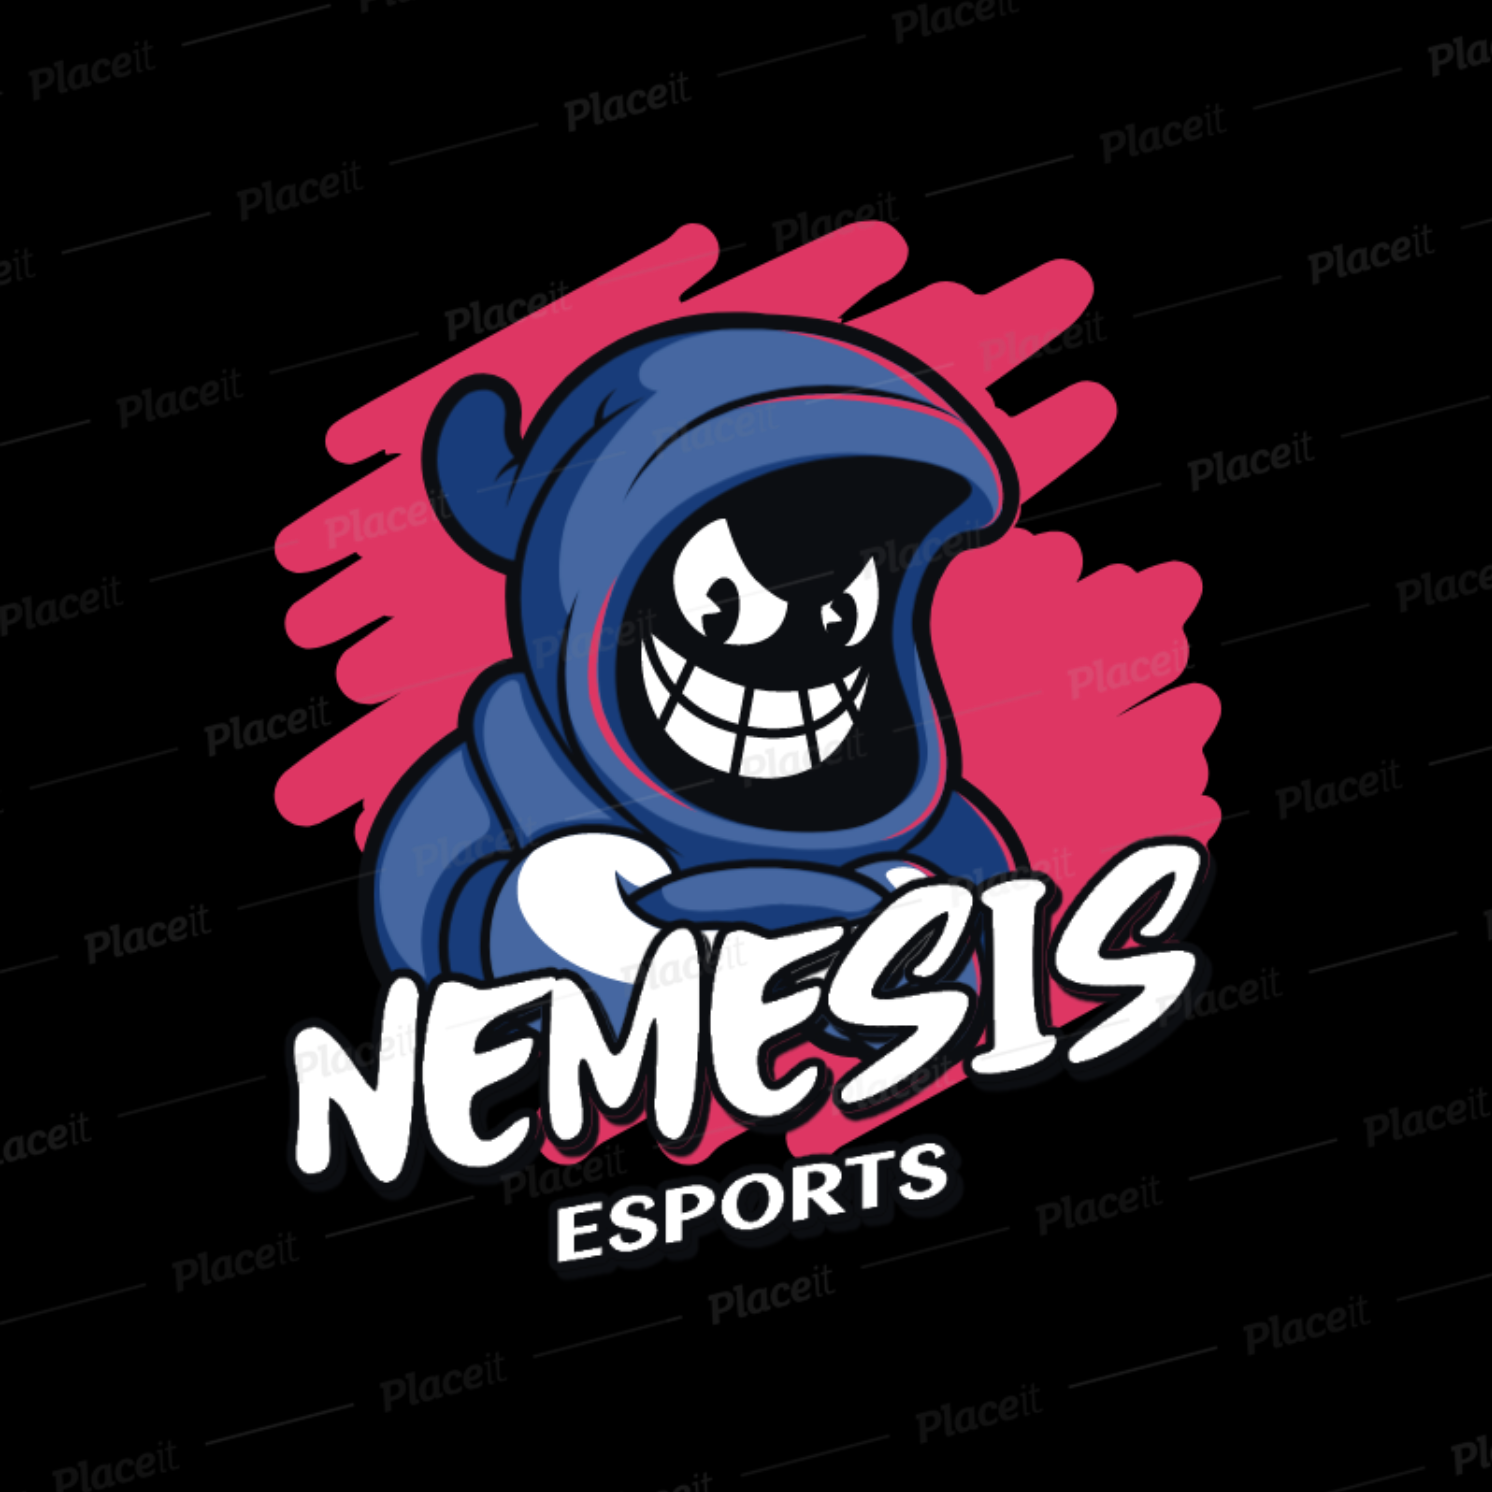 Nemes1s